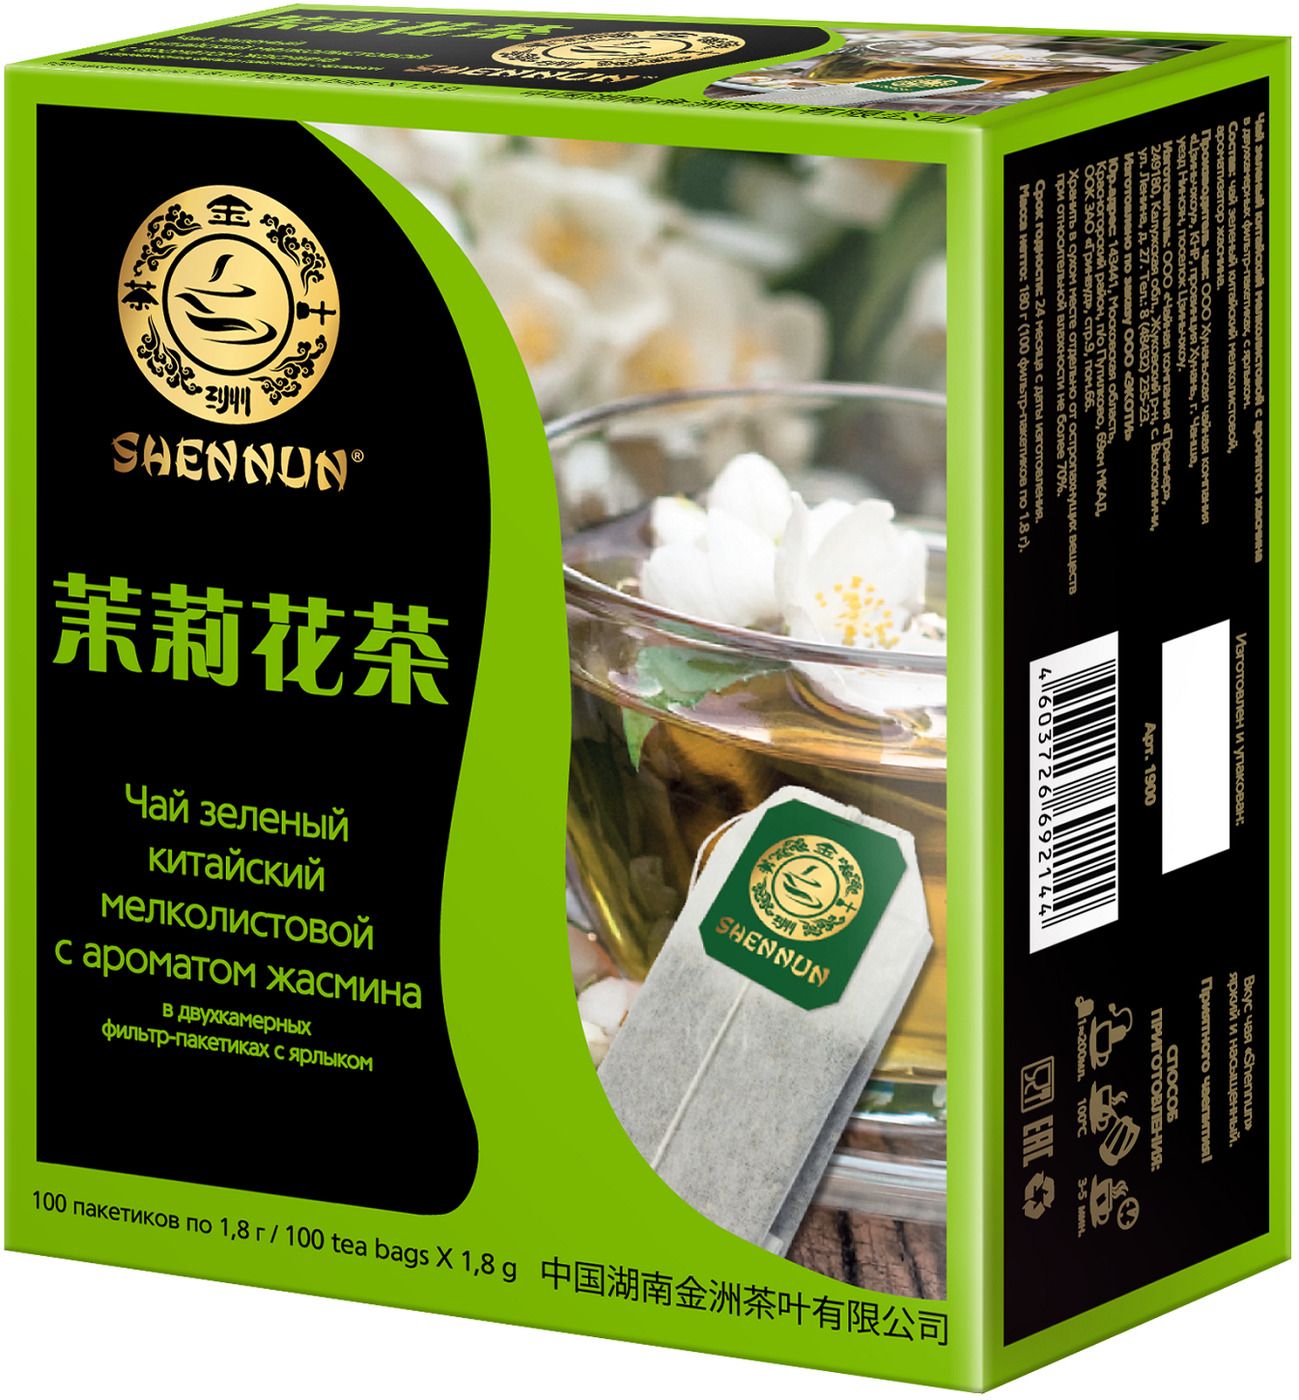 Чай зеленый Shennun. Чай зеленый Shennun, 100 г. Зеленый чай жасмина с араоматам. Чай зеленый Shennun с жасмином в пирамидках.